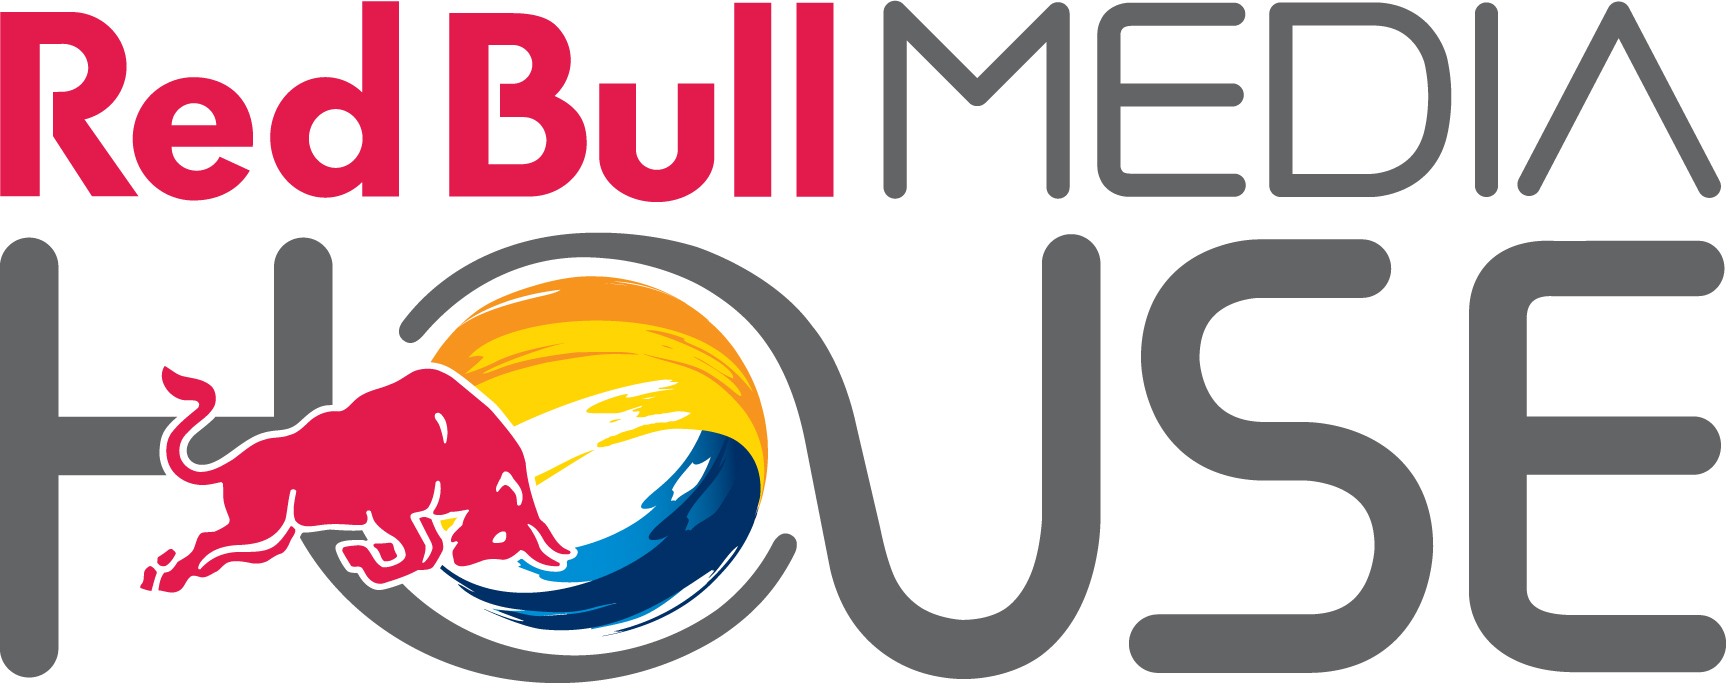 Red Bull Media Logo